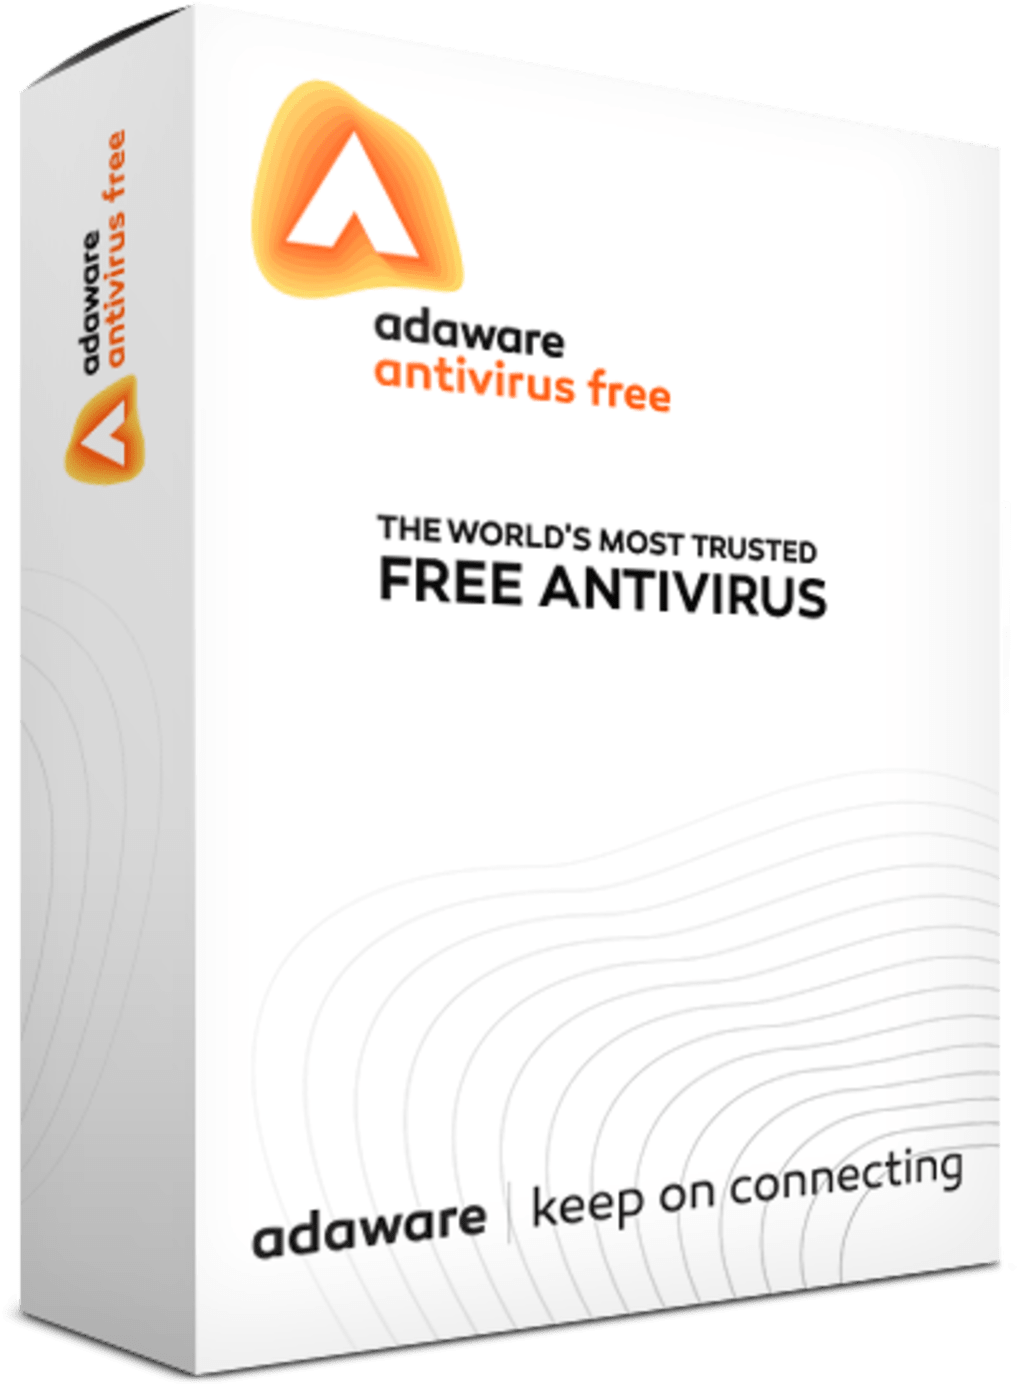 download adaware antivirus free